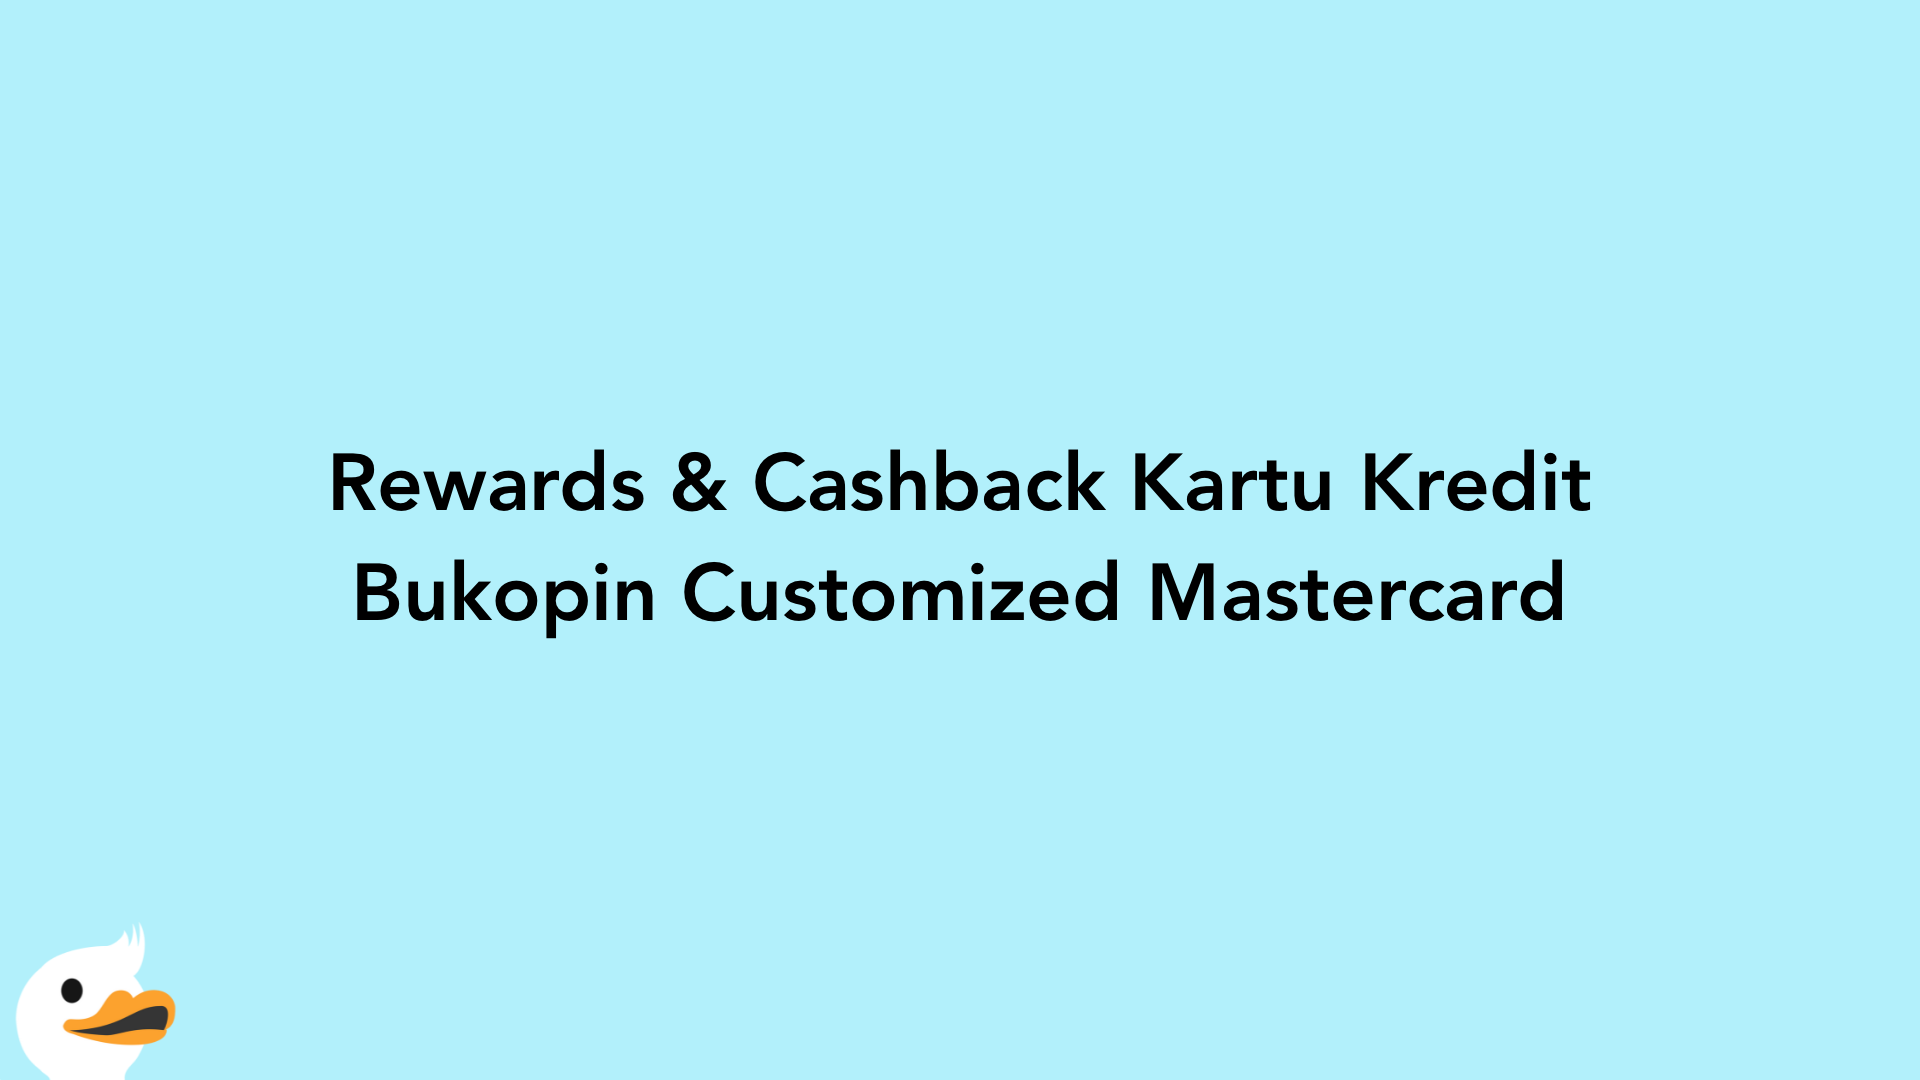 Rewards & Cashback Kartu Kredit Bukopin Customized Mastercard